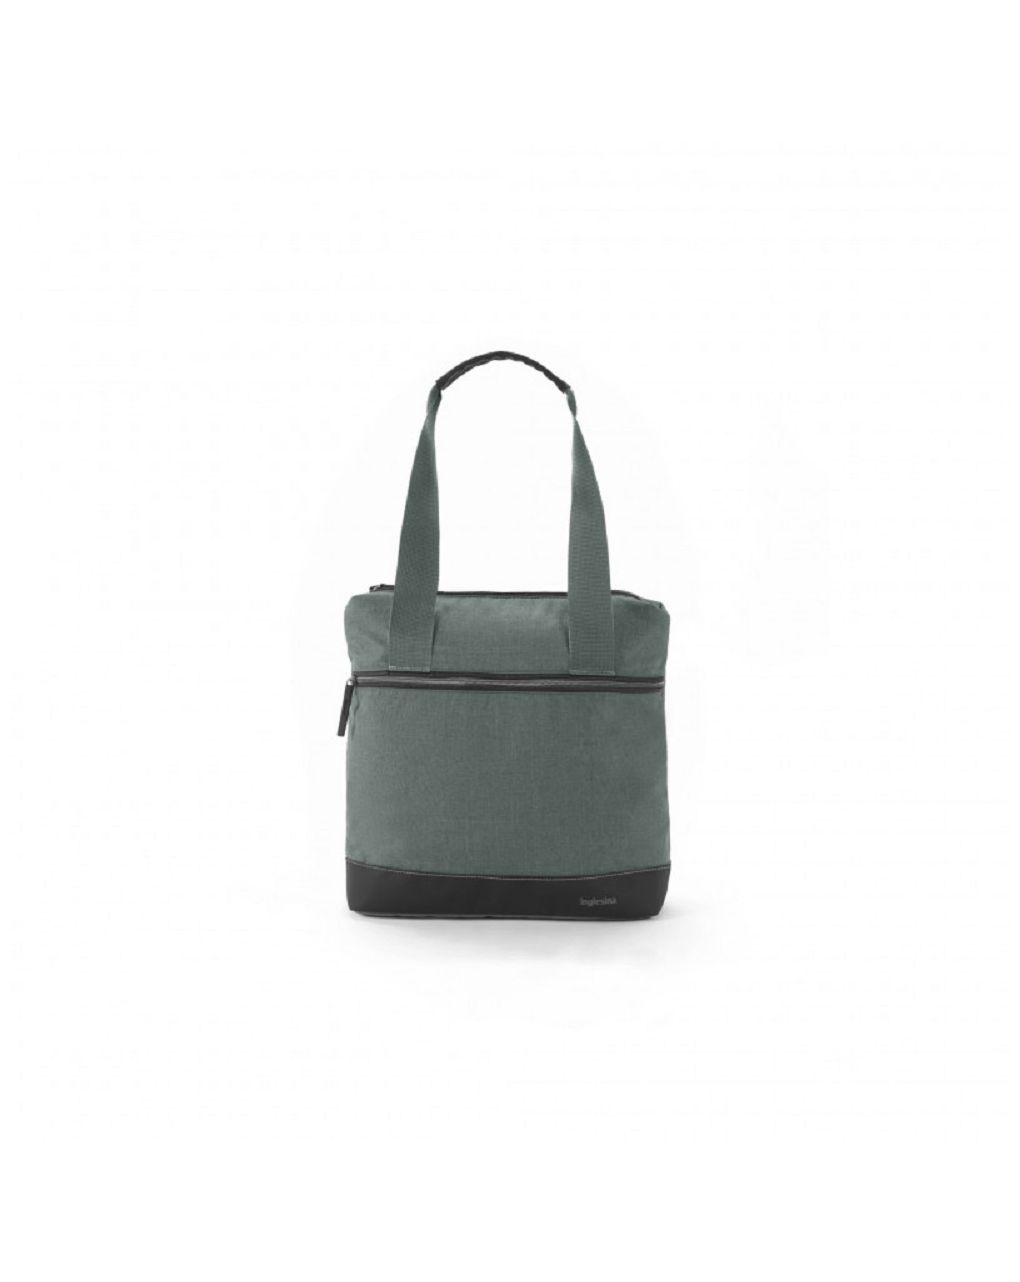 Back bag color neptune greyish - Inglesina